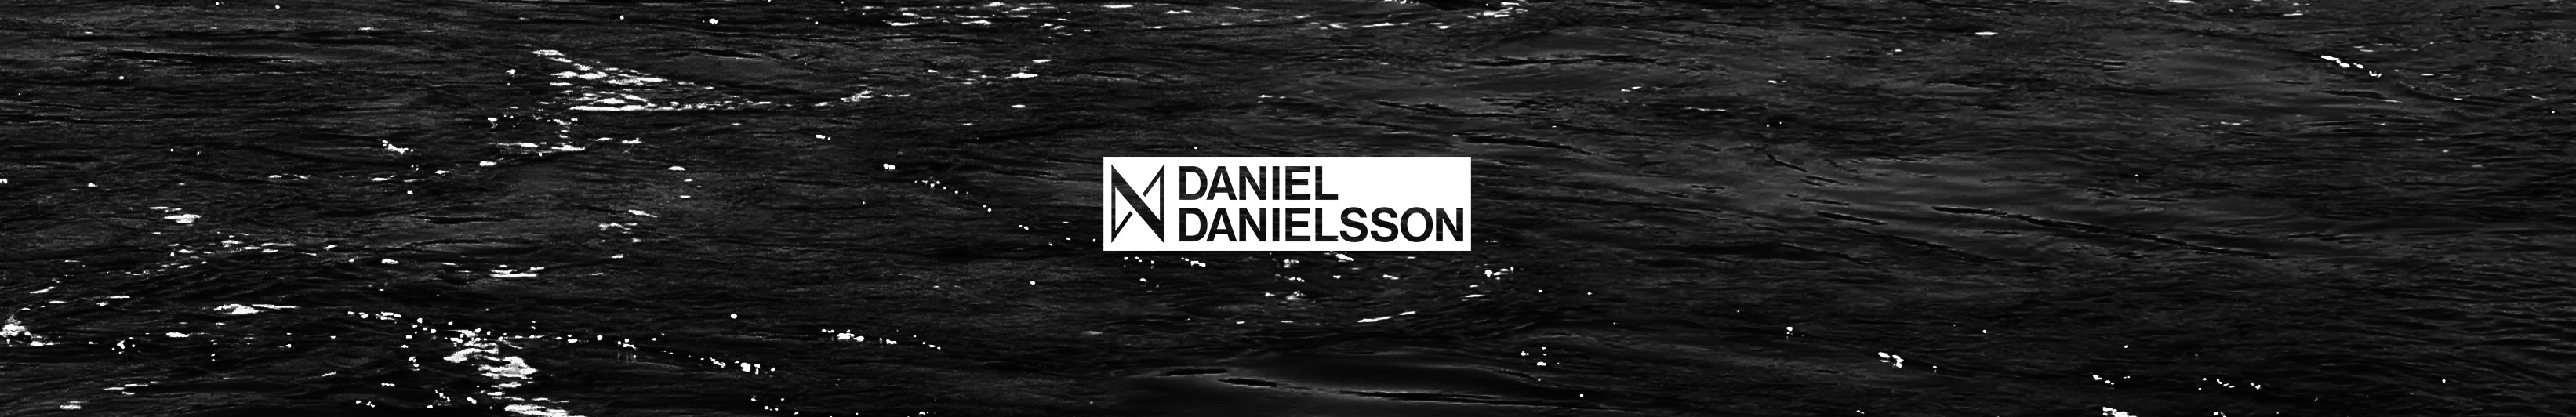 Daniel Danielsson's profile banner